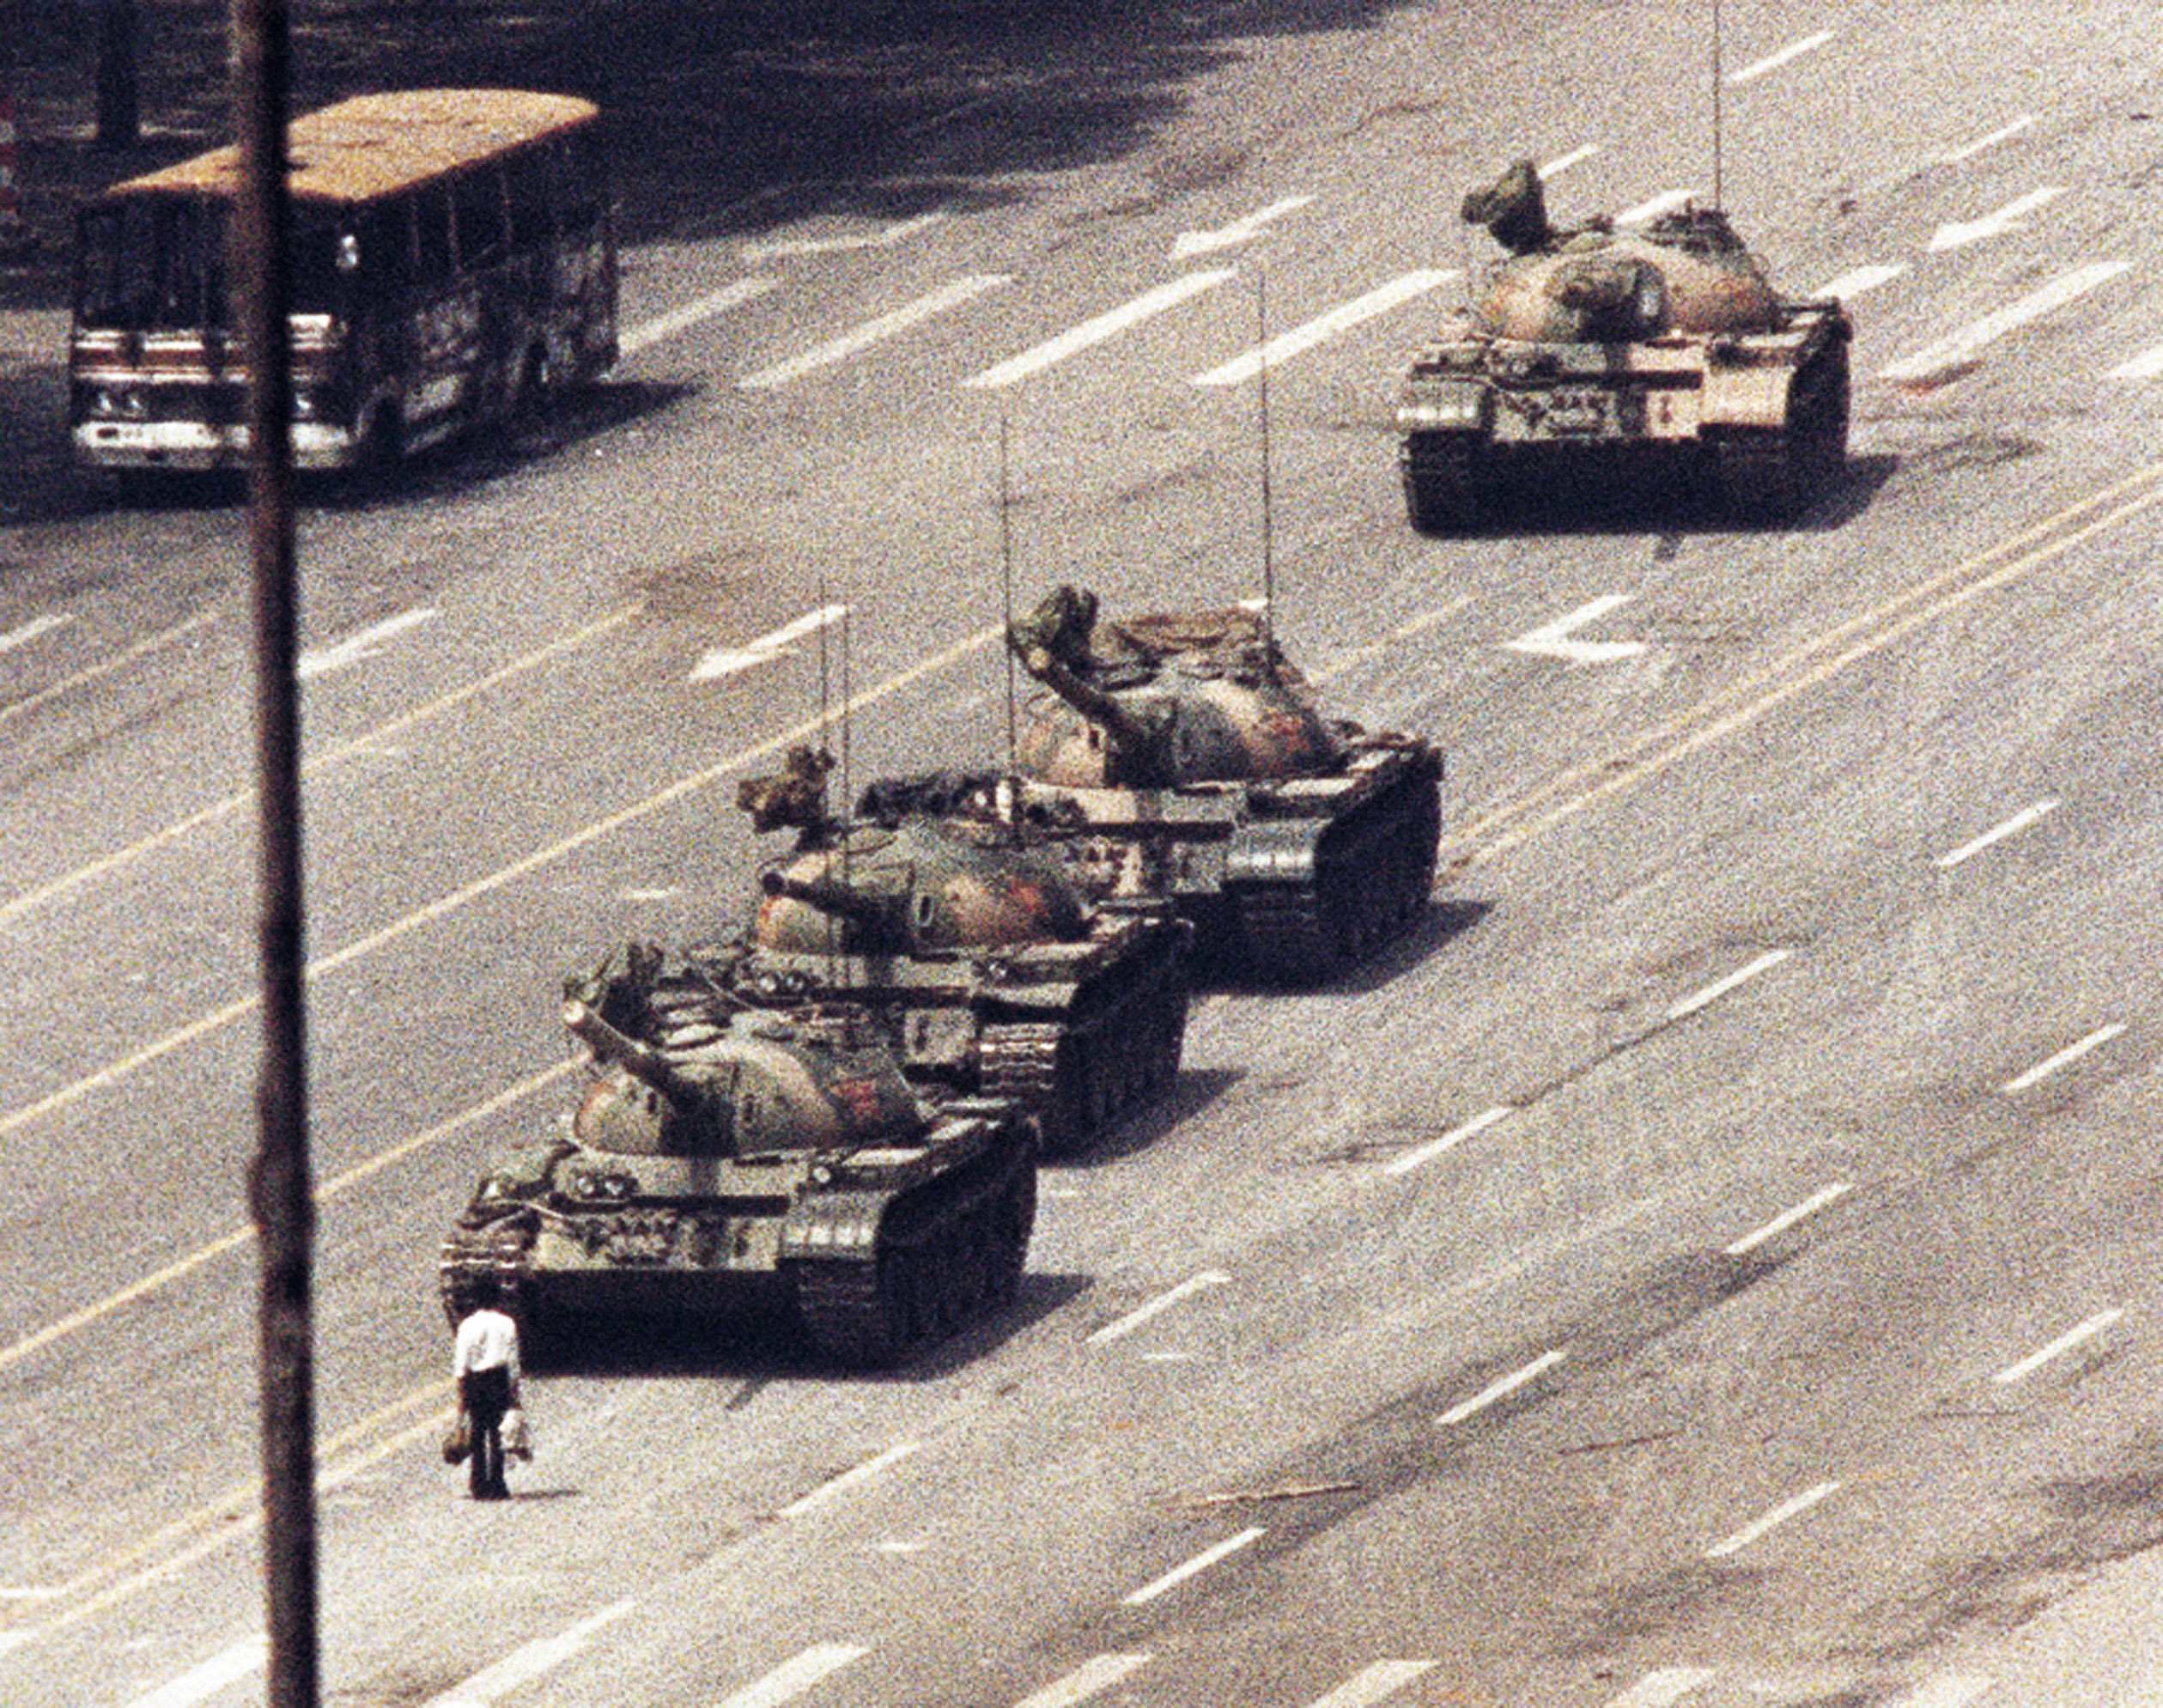 1989년 톈안먼 민주화 시위 당시 톈안먼 광장으로 진격하는 전차를 막아선 일명 ‘탱크맨’은 톈안먼 사태를 상징하는 대표적인 주인공이다.  CNN 캡처